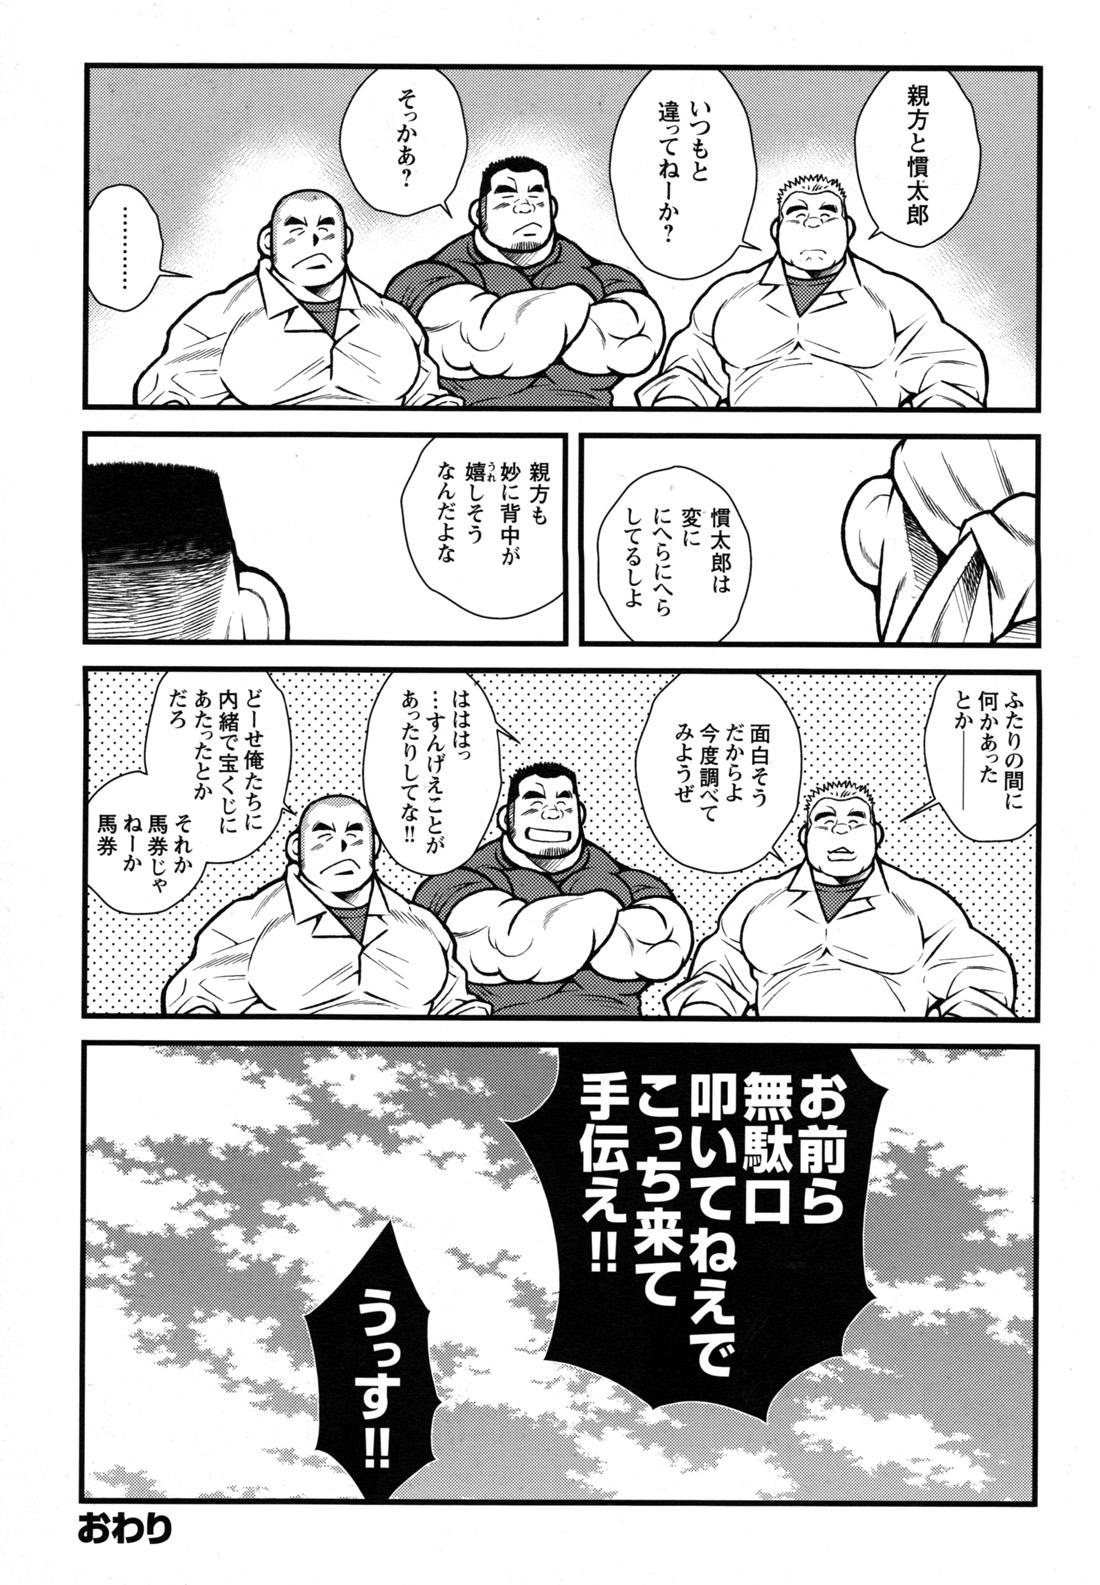 Comic G-men Gaho No.09 Gacchibi Zeme 72